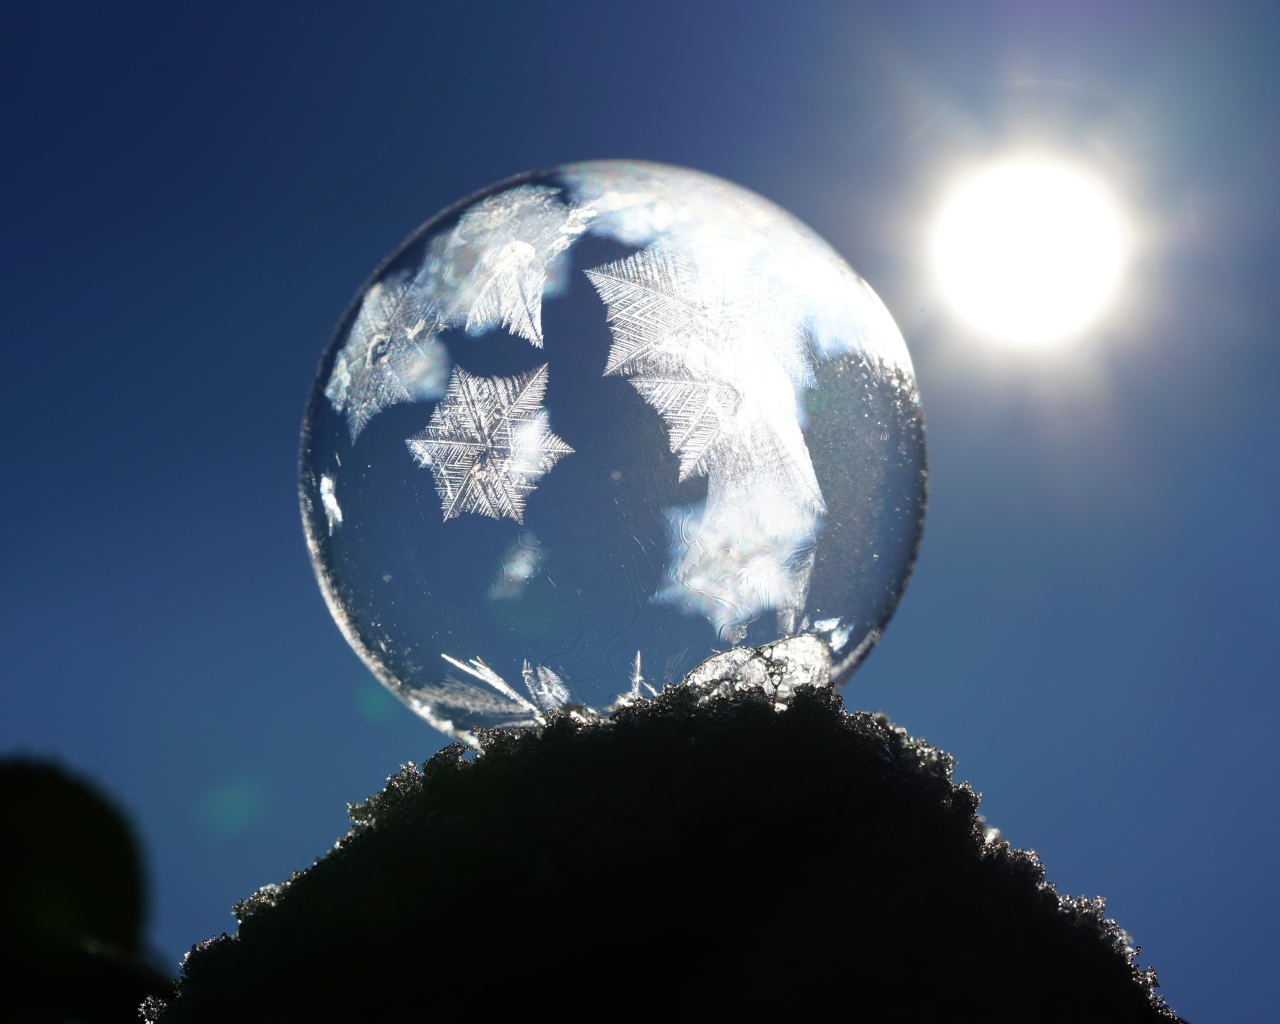 Мыльный пузырь в лучах солнца на снегу